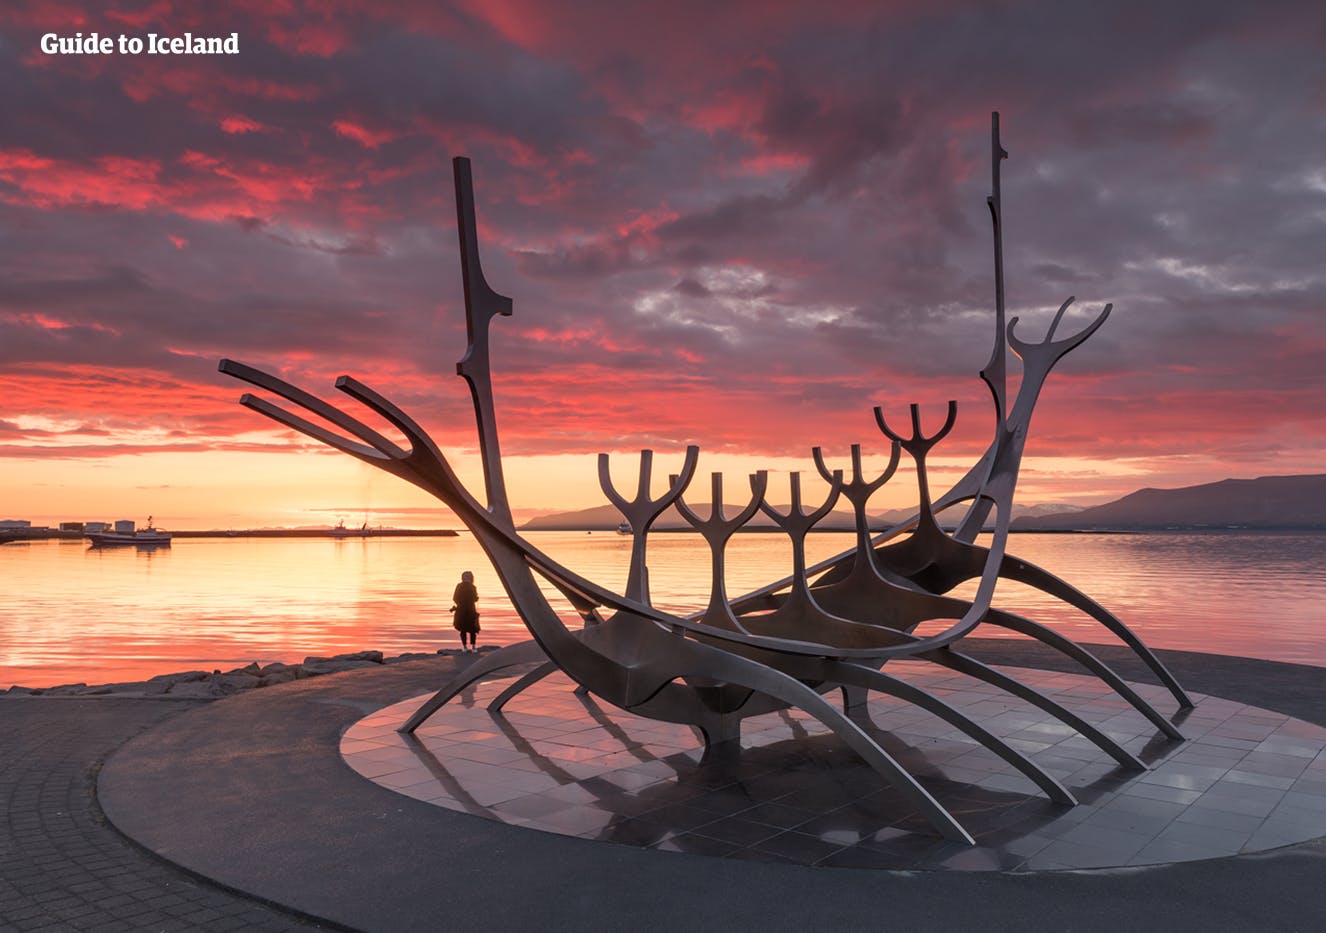 Se dice que el Sun Voyager en Reikiavik representa el espíritu aventurero de Islandia.